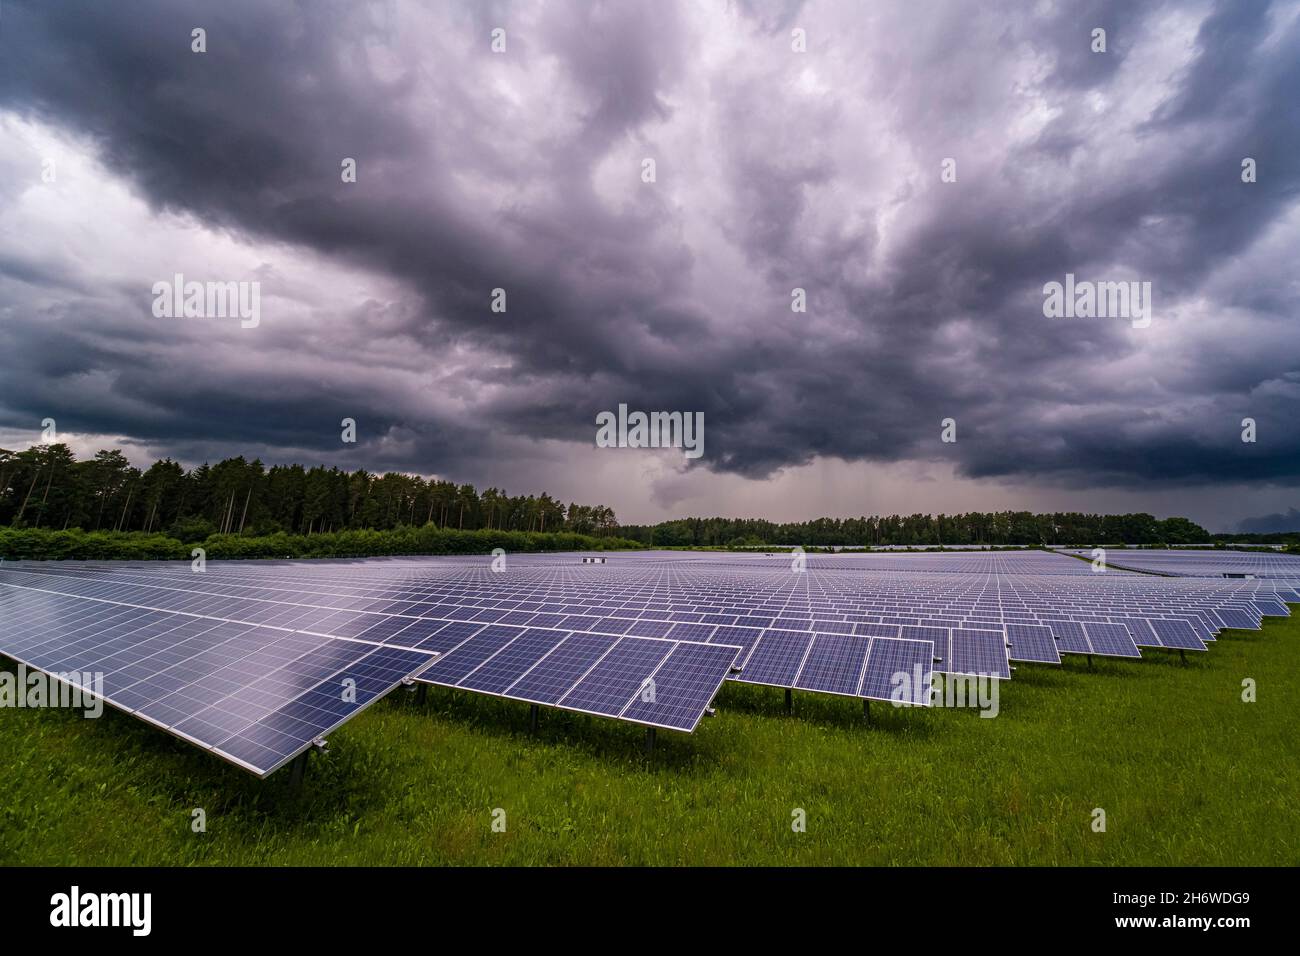 Dunkles Gewitter und Regenwolken über einem großen Solarkraftwerk. Stockfoto